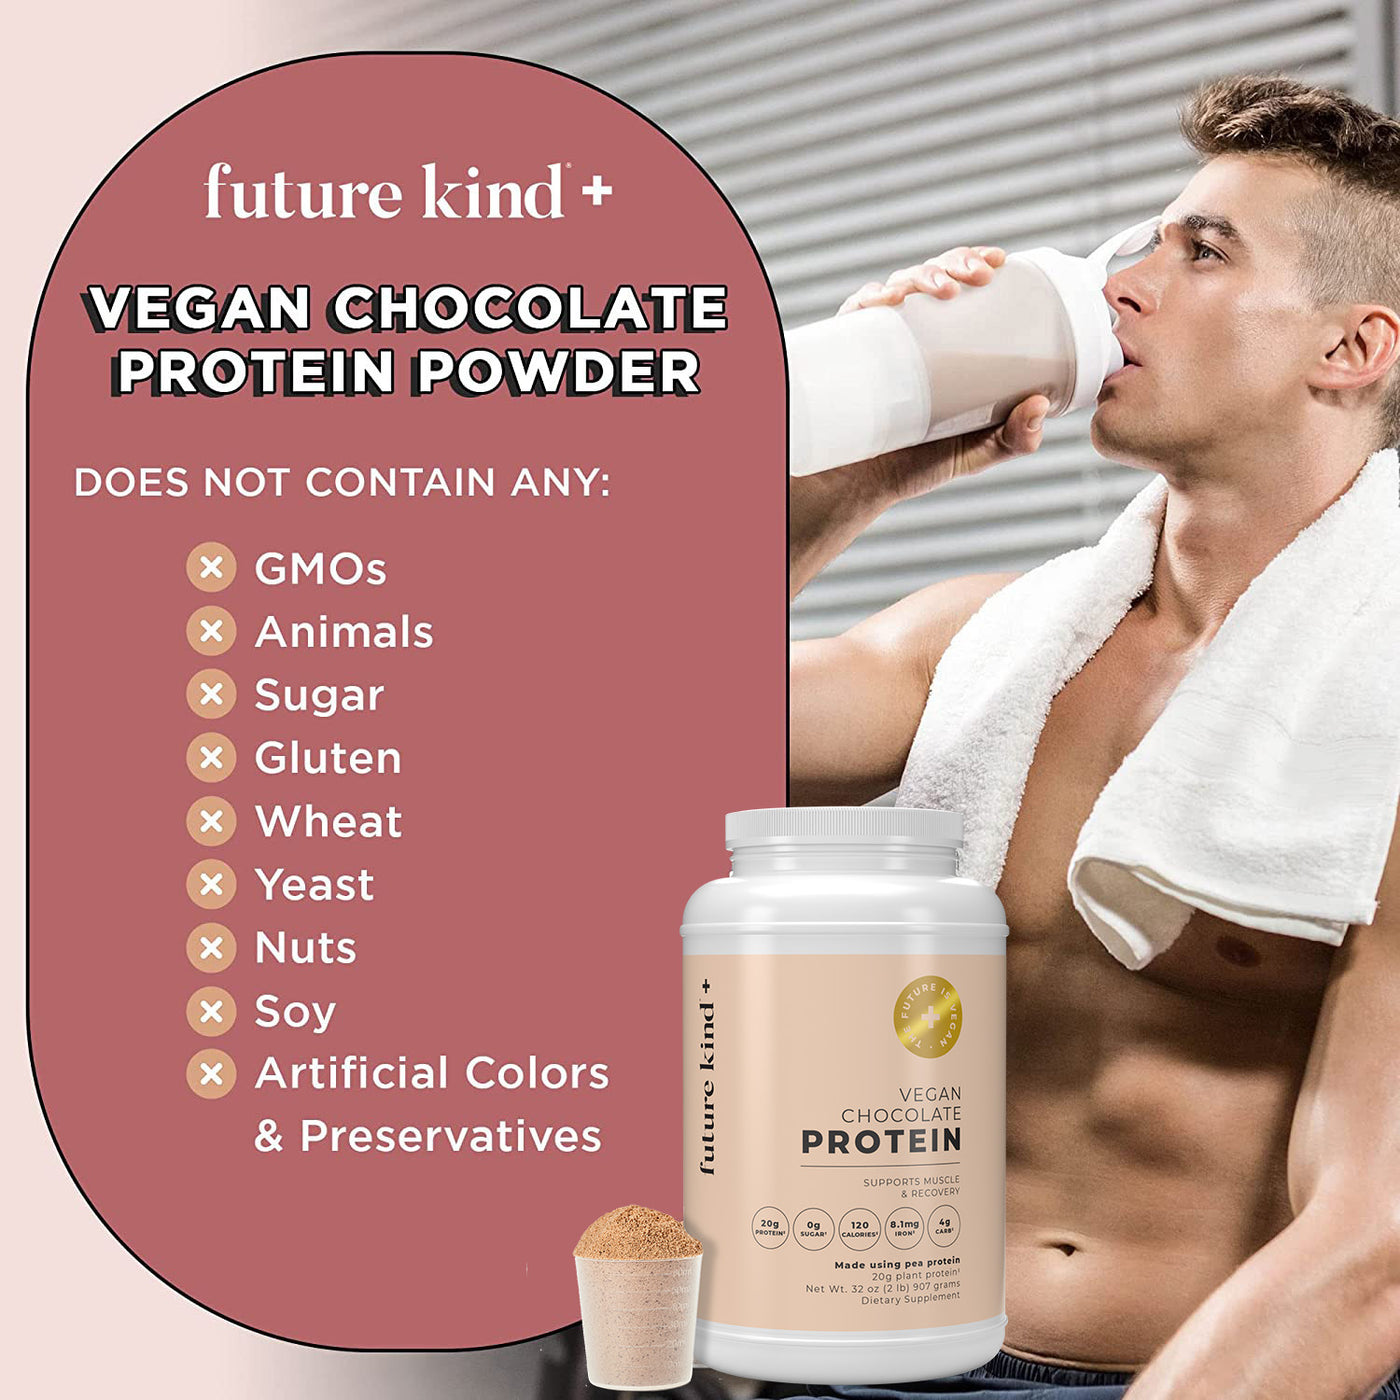 Vegan Protein Powder - Chocolate Flavored